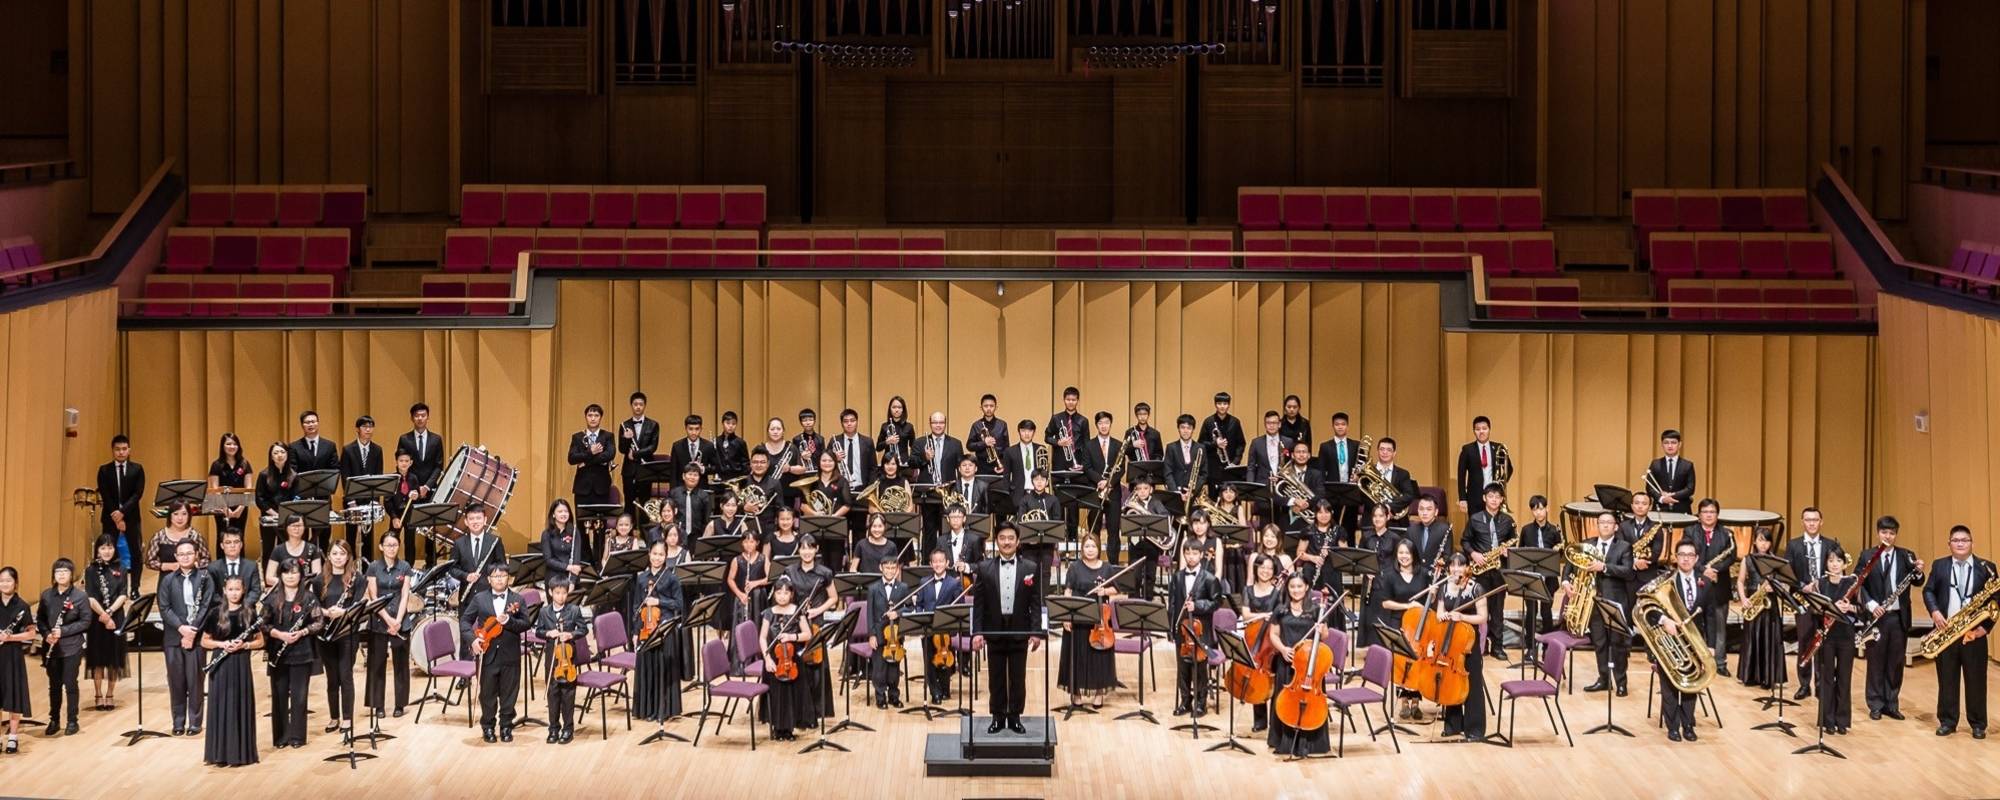 Pingtung Symphonic Band 2019 Concert